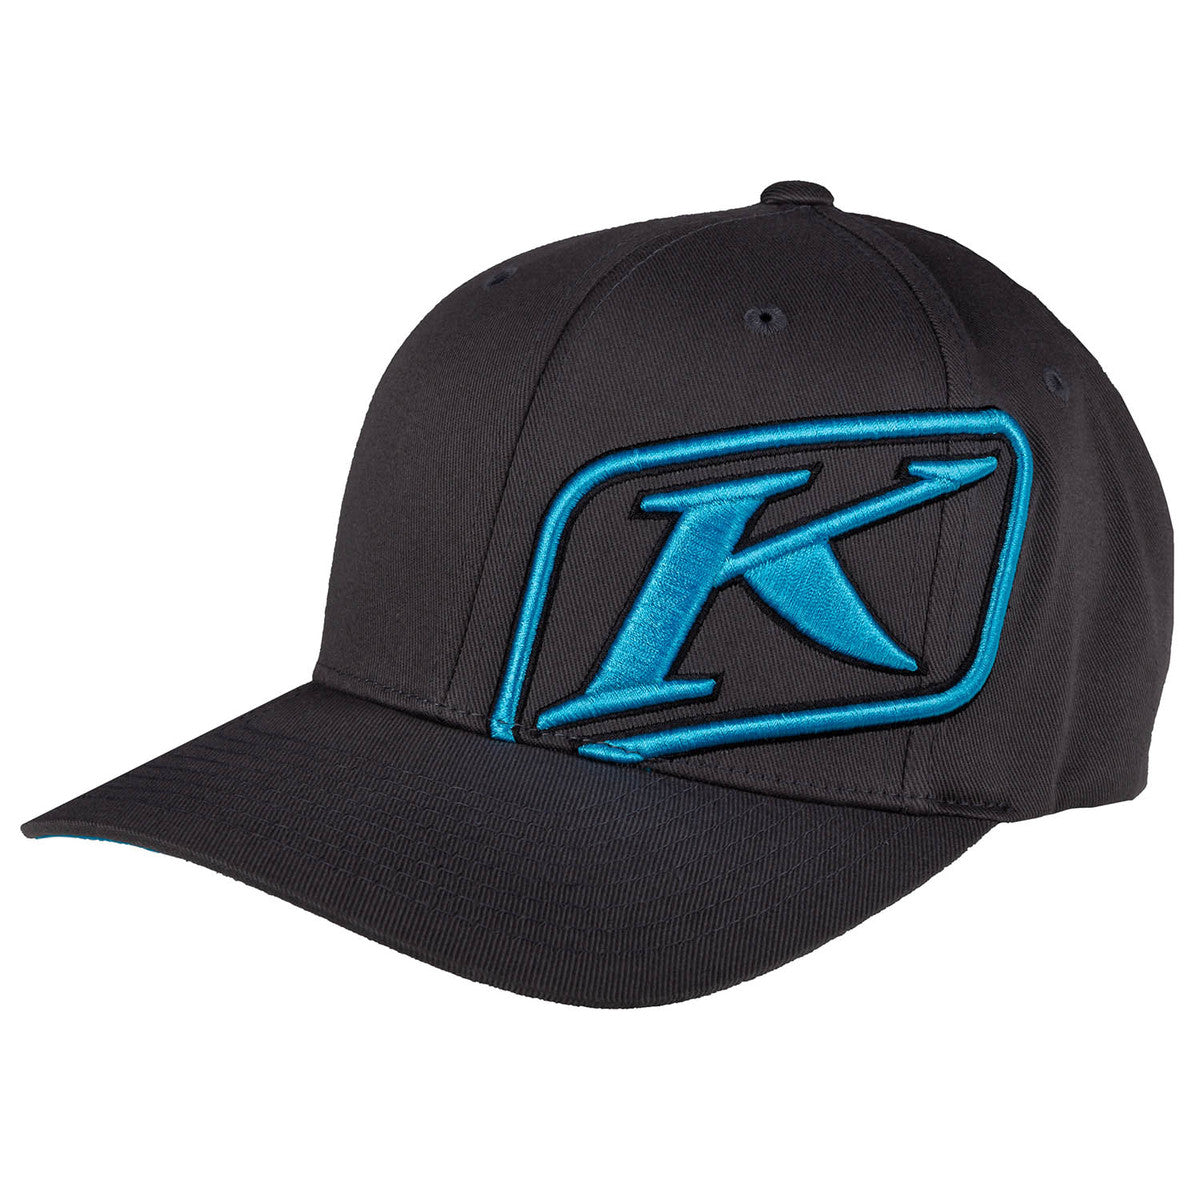 Klim Rider Asphalt-Vivid Blue Hat